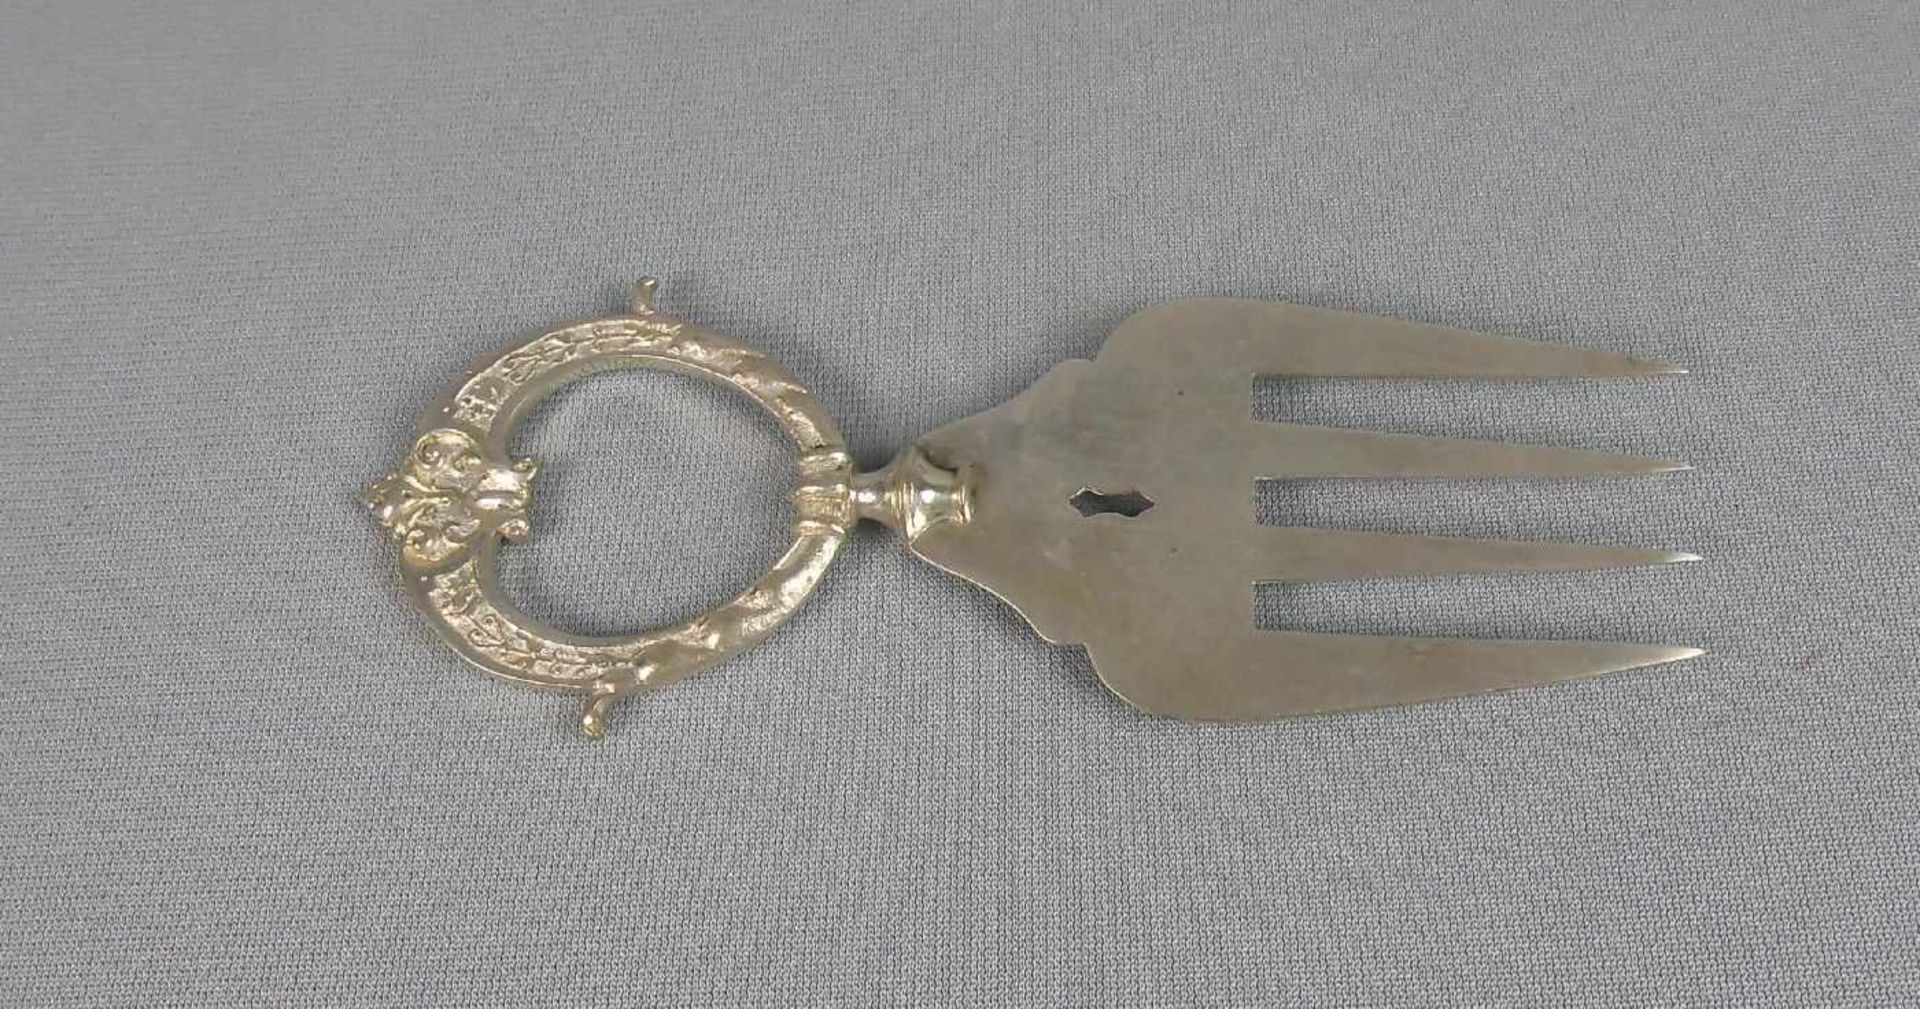 VORLEGEGABEL / serving fork, deutsch, Historismus, gem. "W.M.N.N" (Marke um 1900), - Bild 2 aus 3